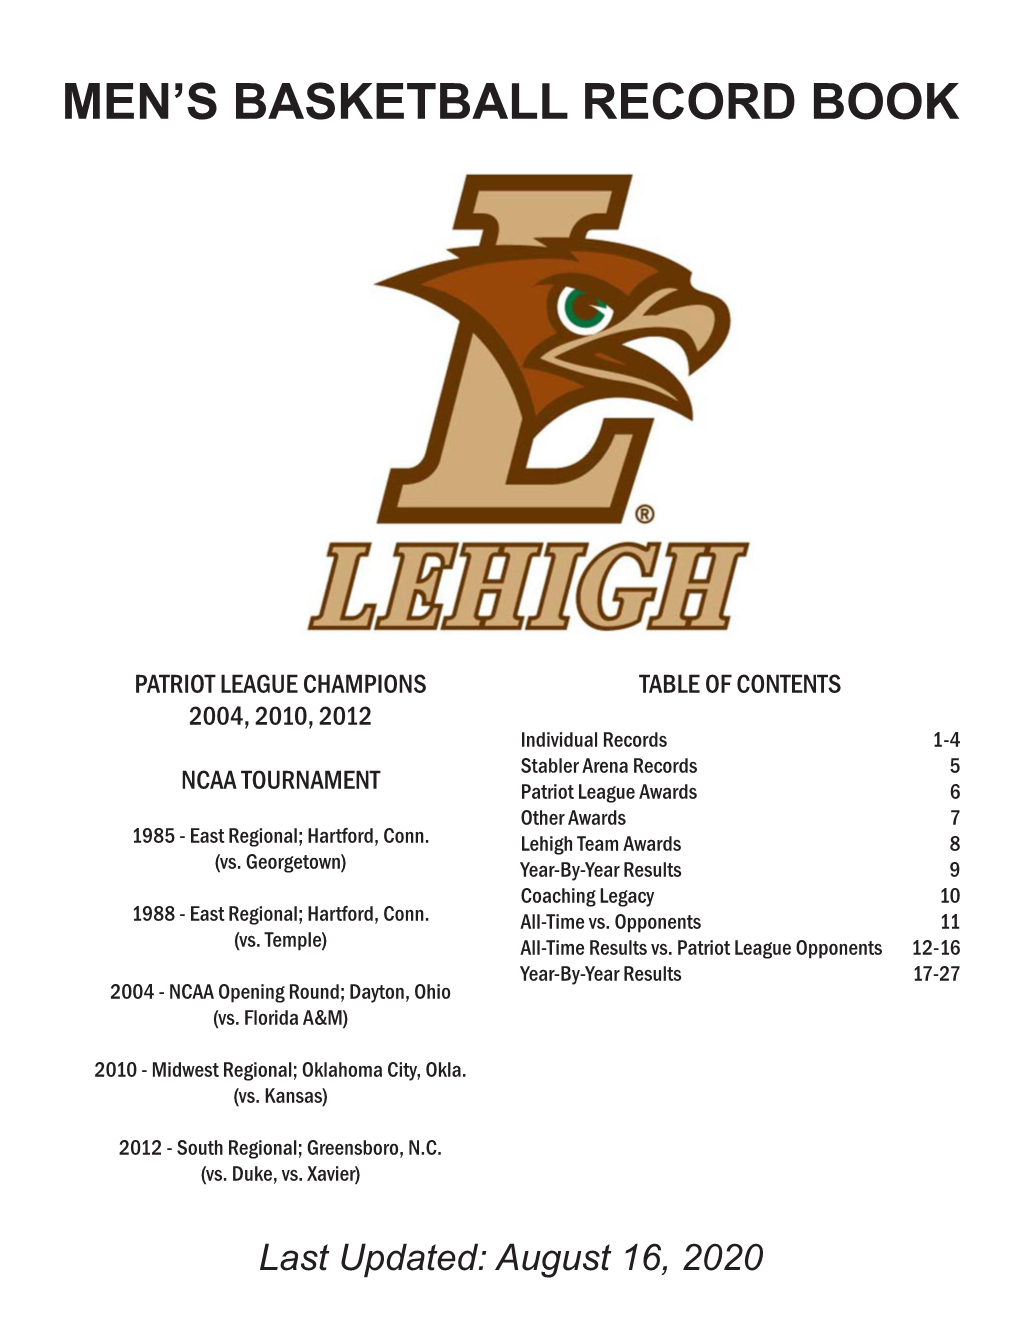 Lehigh Men's Basketball Record Book